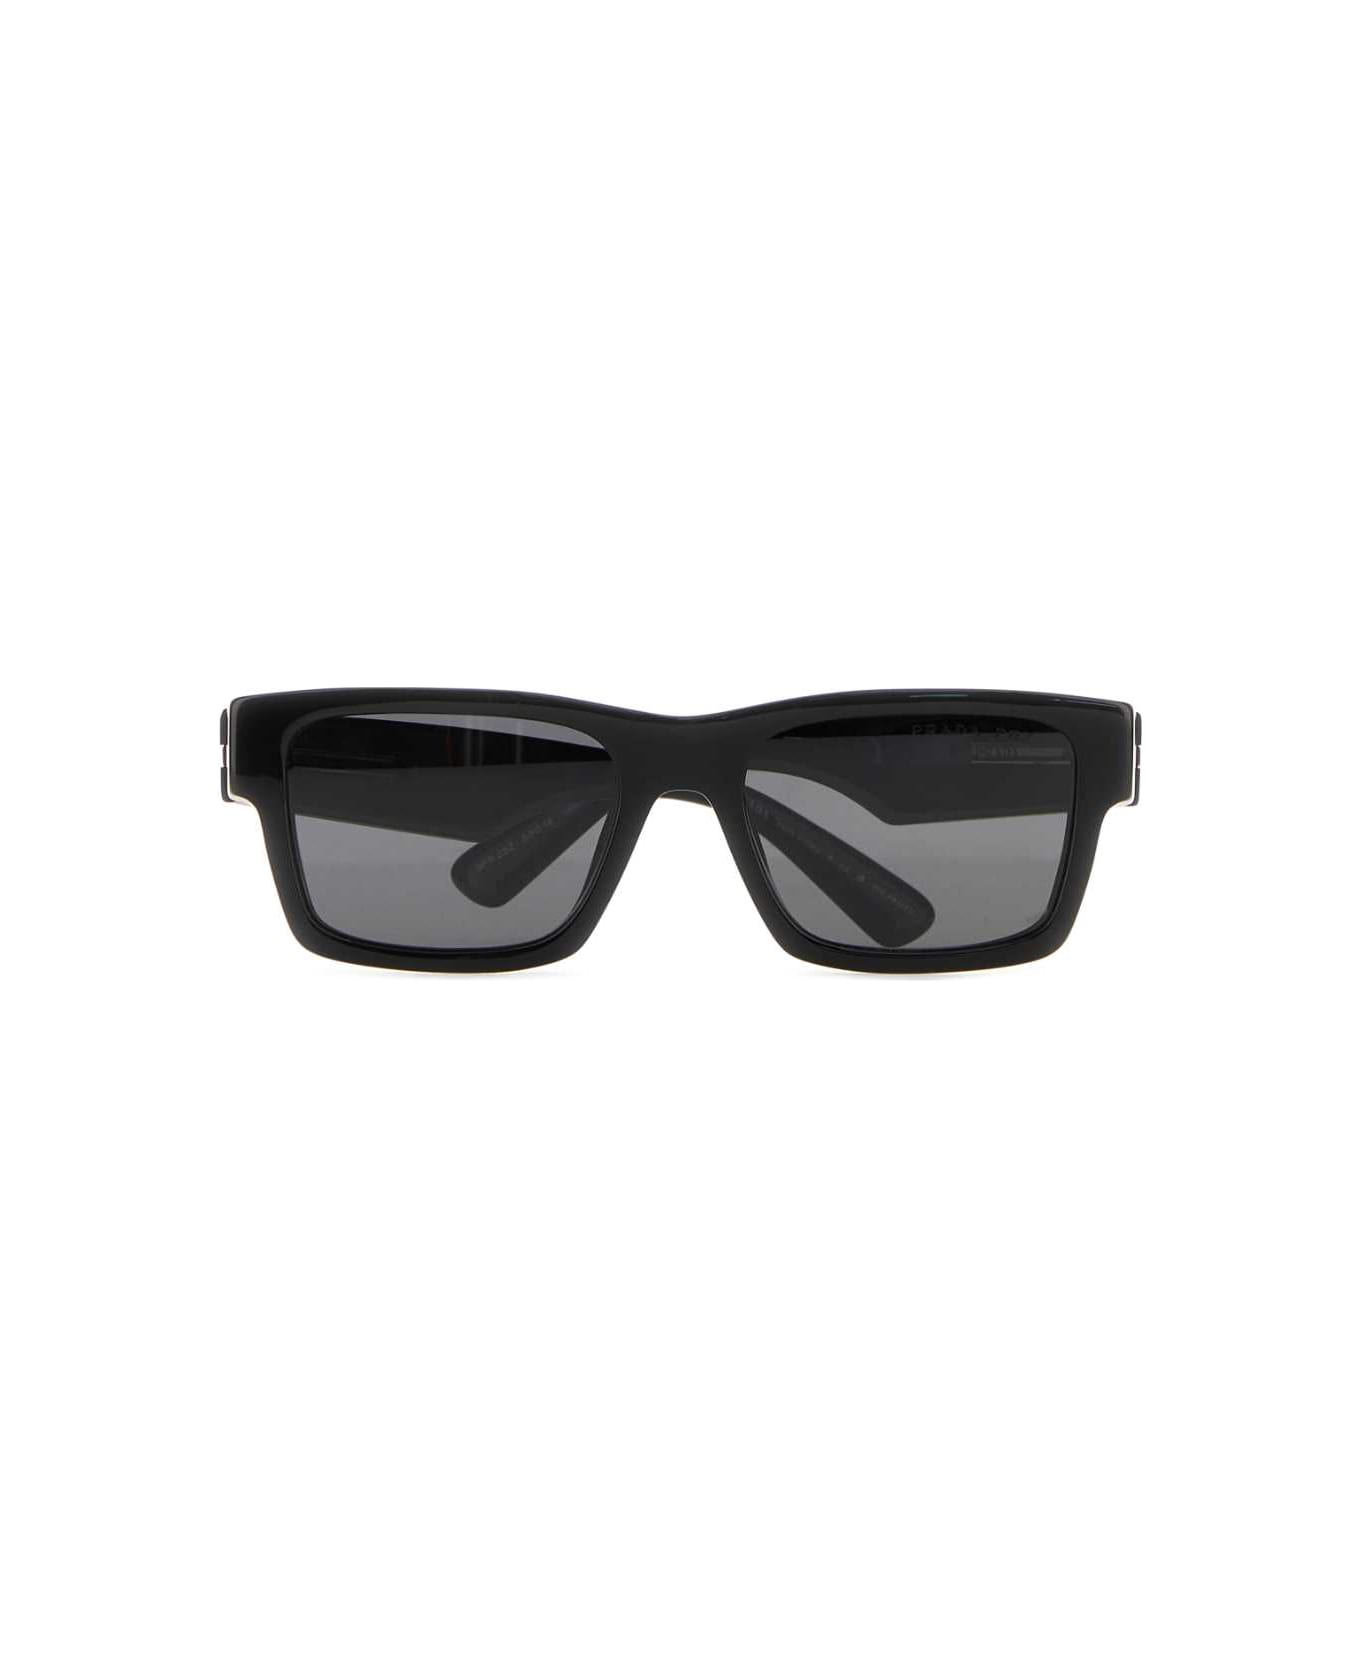 Prada Black Acetate Sunglasses - LENSESARDESIA